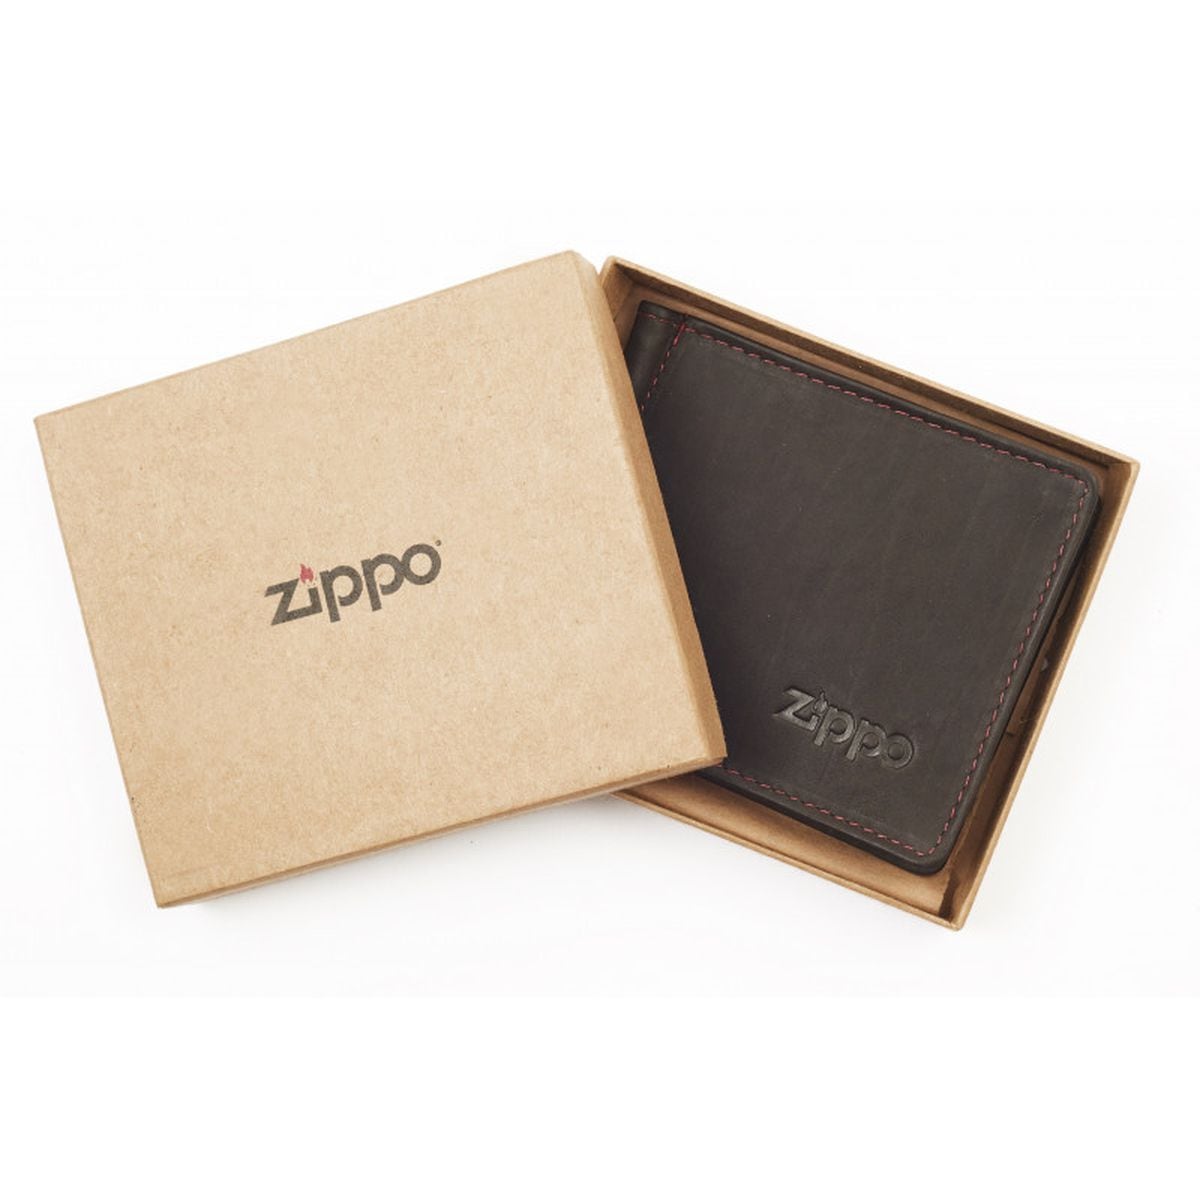 Zippo wallet